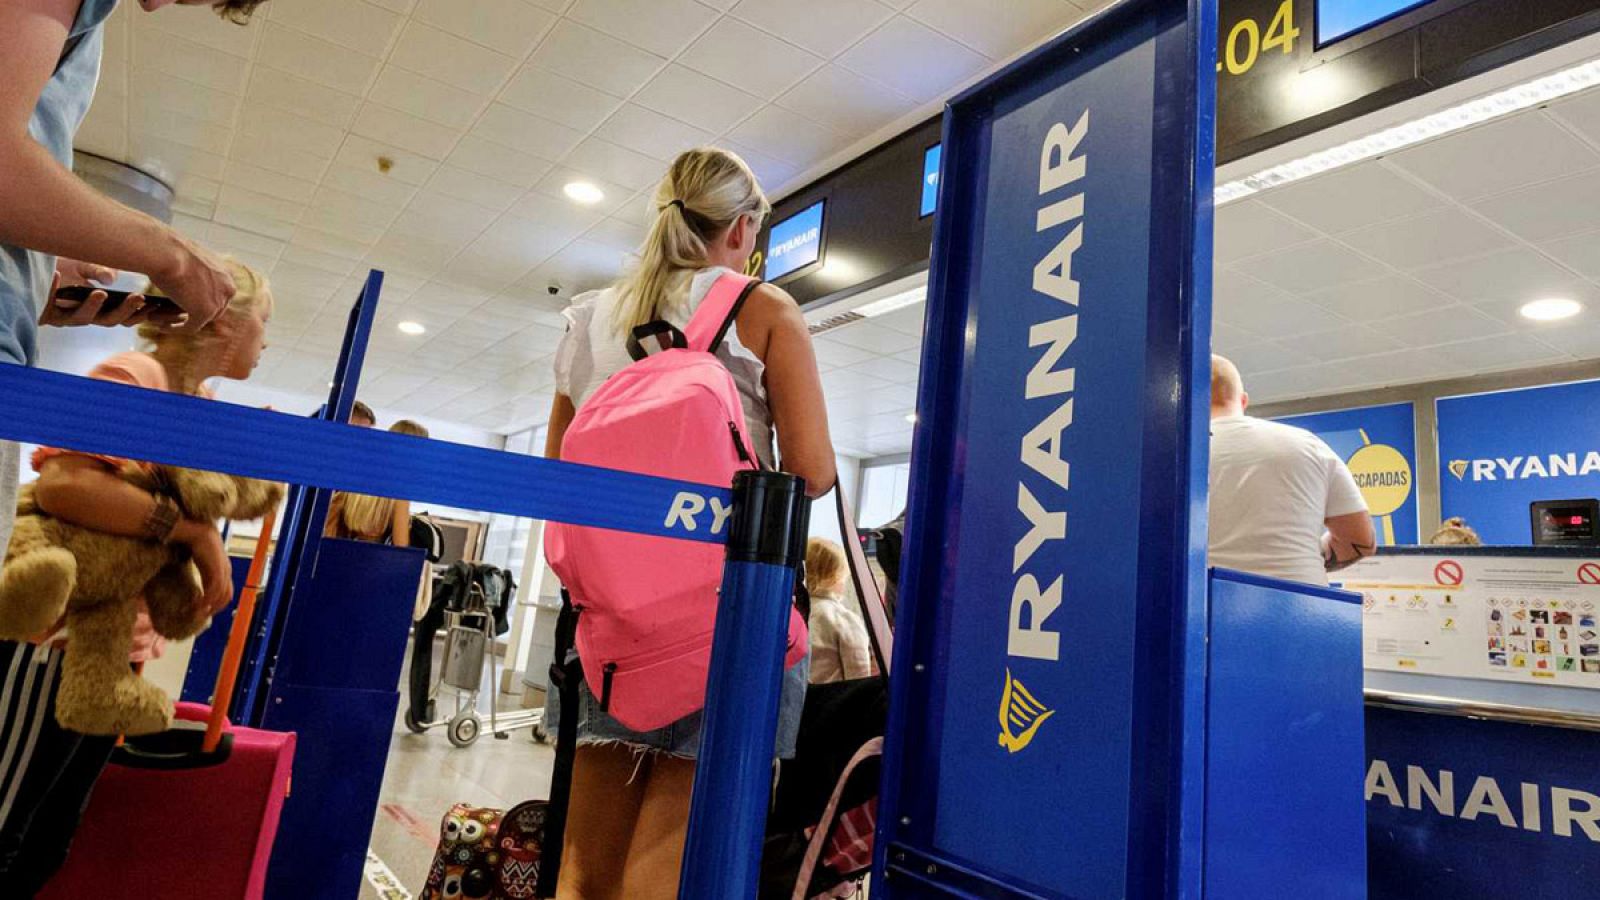 Condenan a Ryanair por cobrar un un suplemento "abusivo" a una pasajera por llevar bolso y maleta